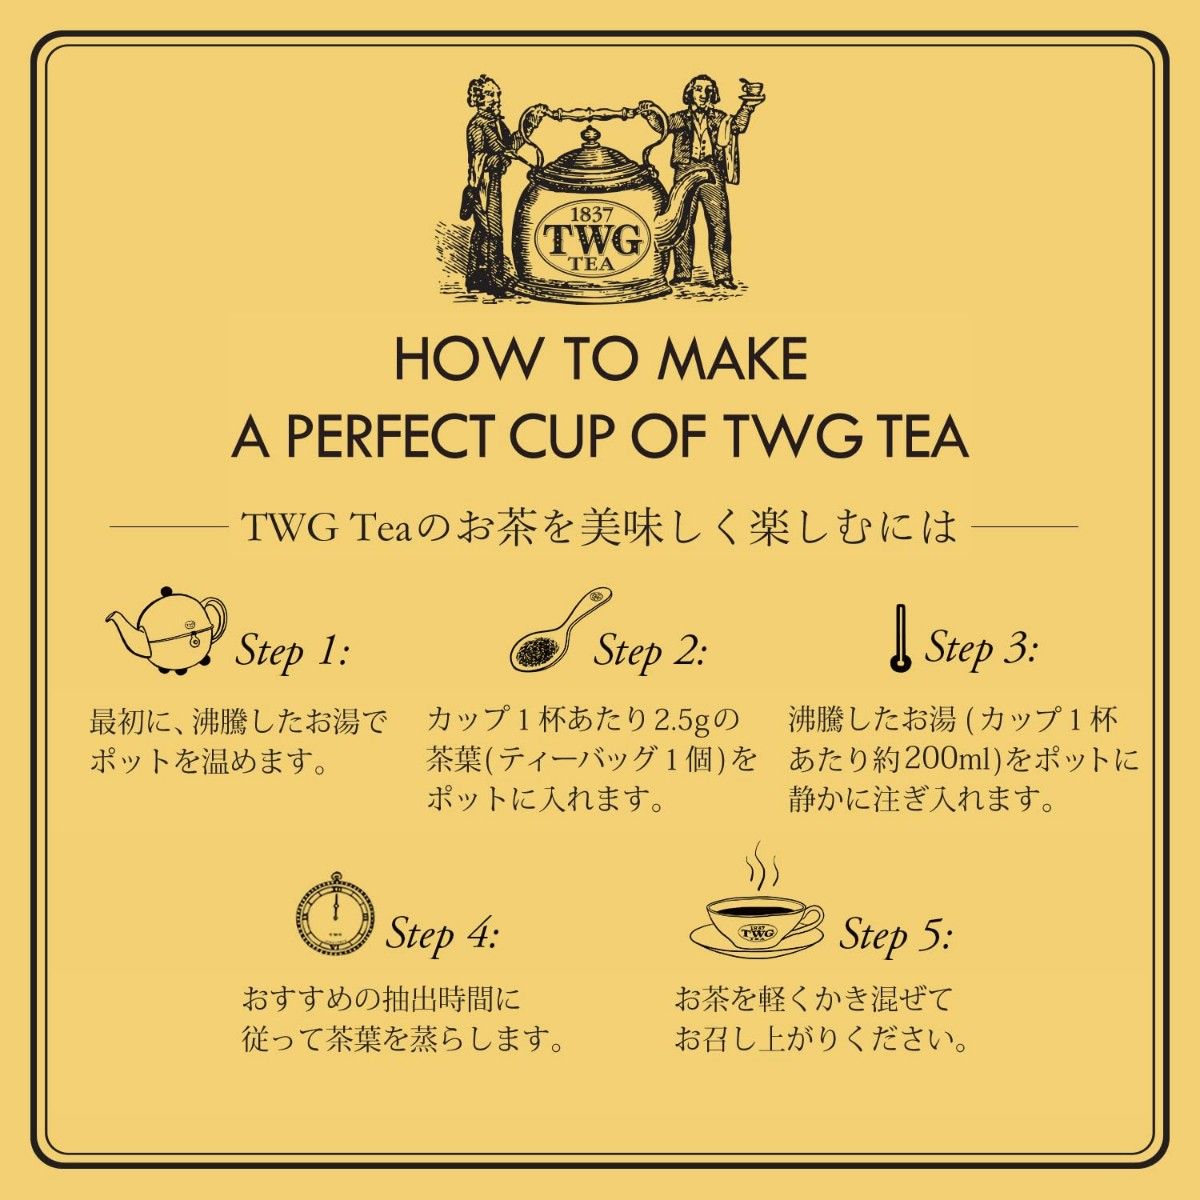 【送料無料】TWG Tea ブレックファスト アールグレイコットンティーバッグ 紅茶 高級茶葉 シンガポール お茶